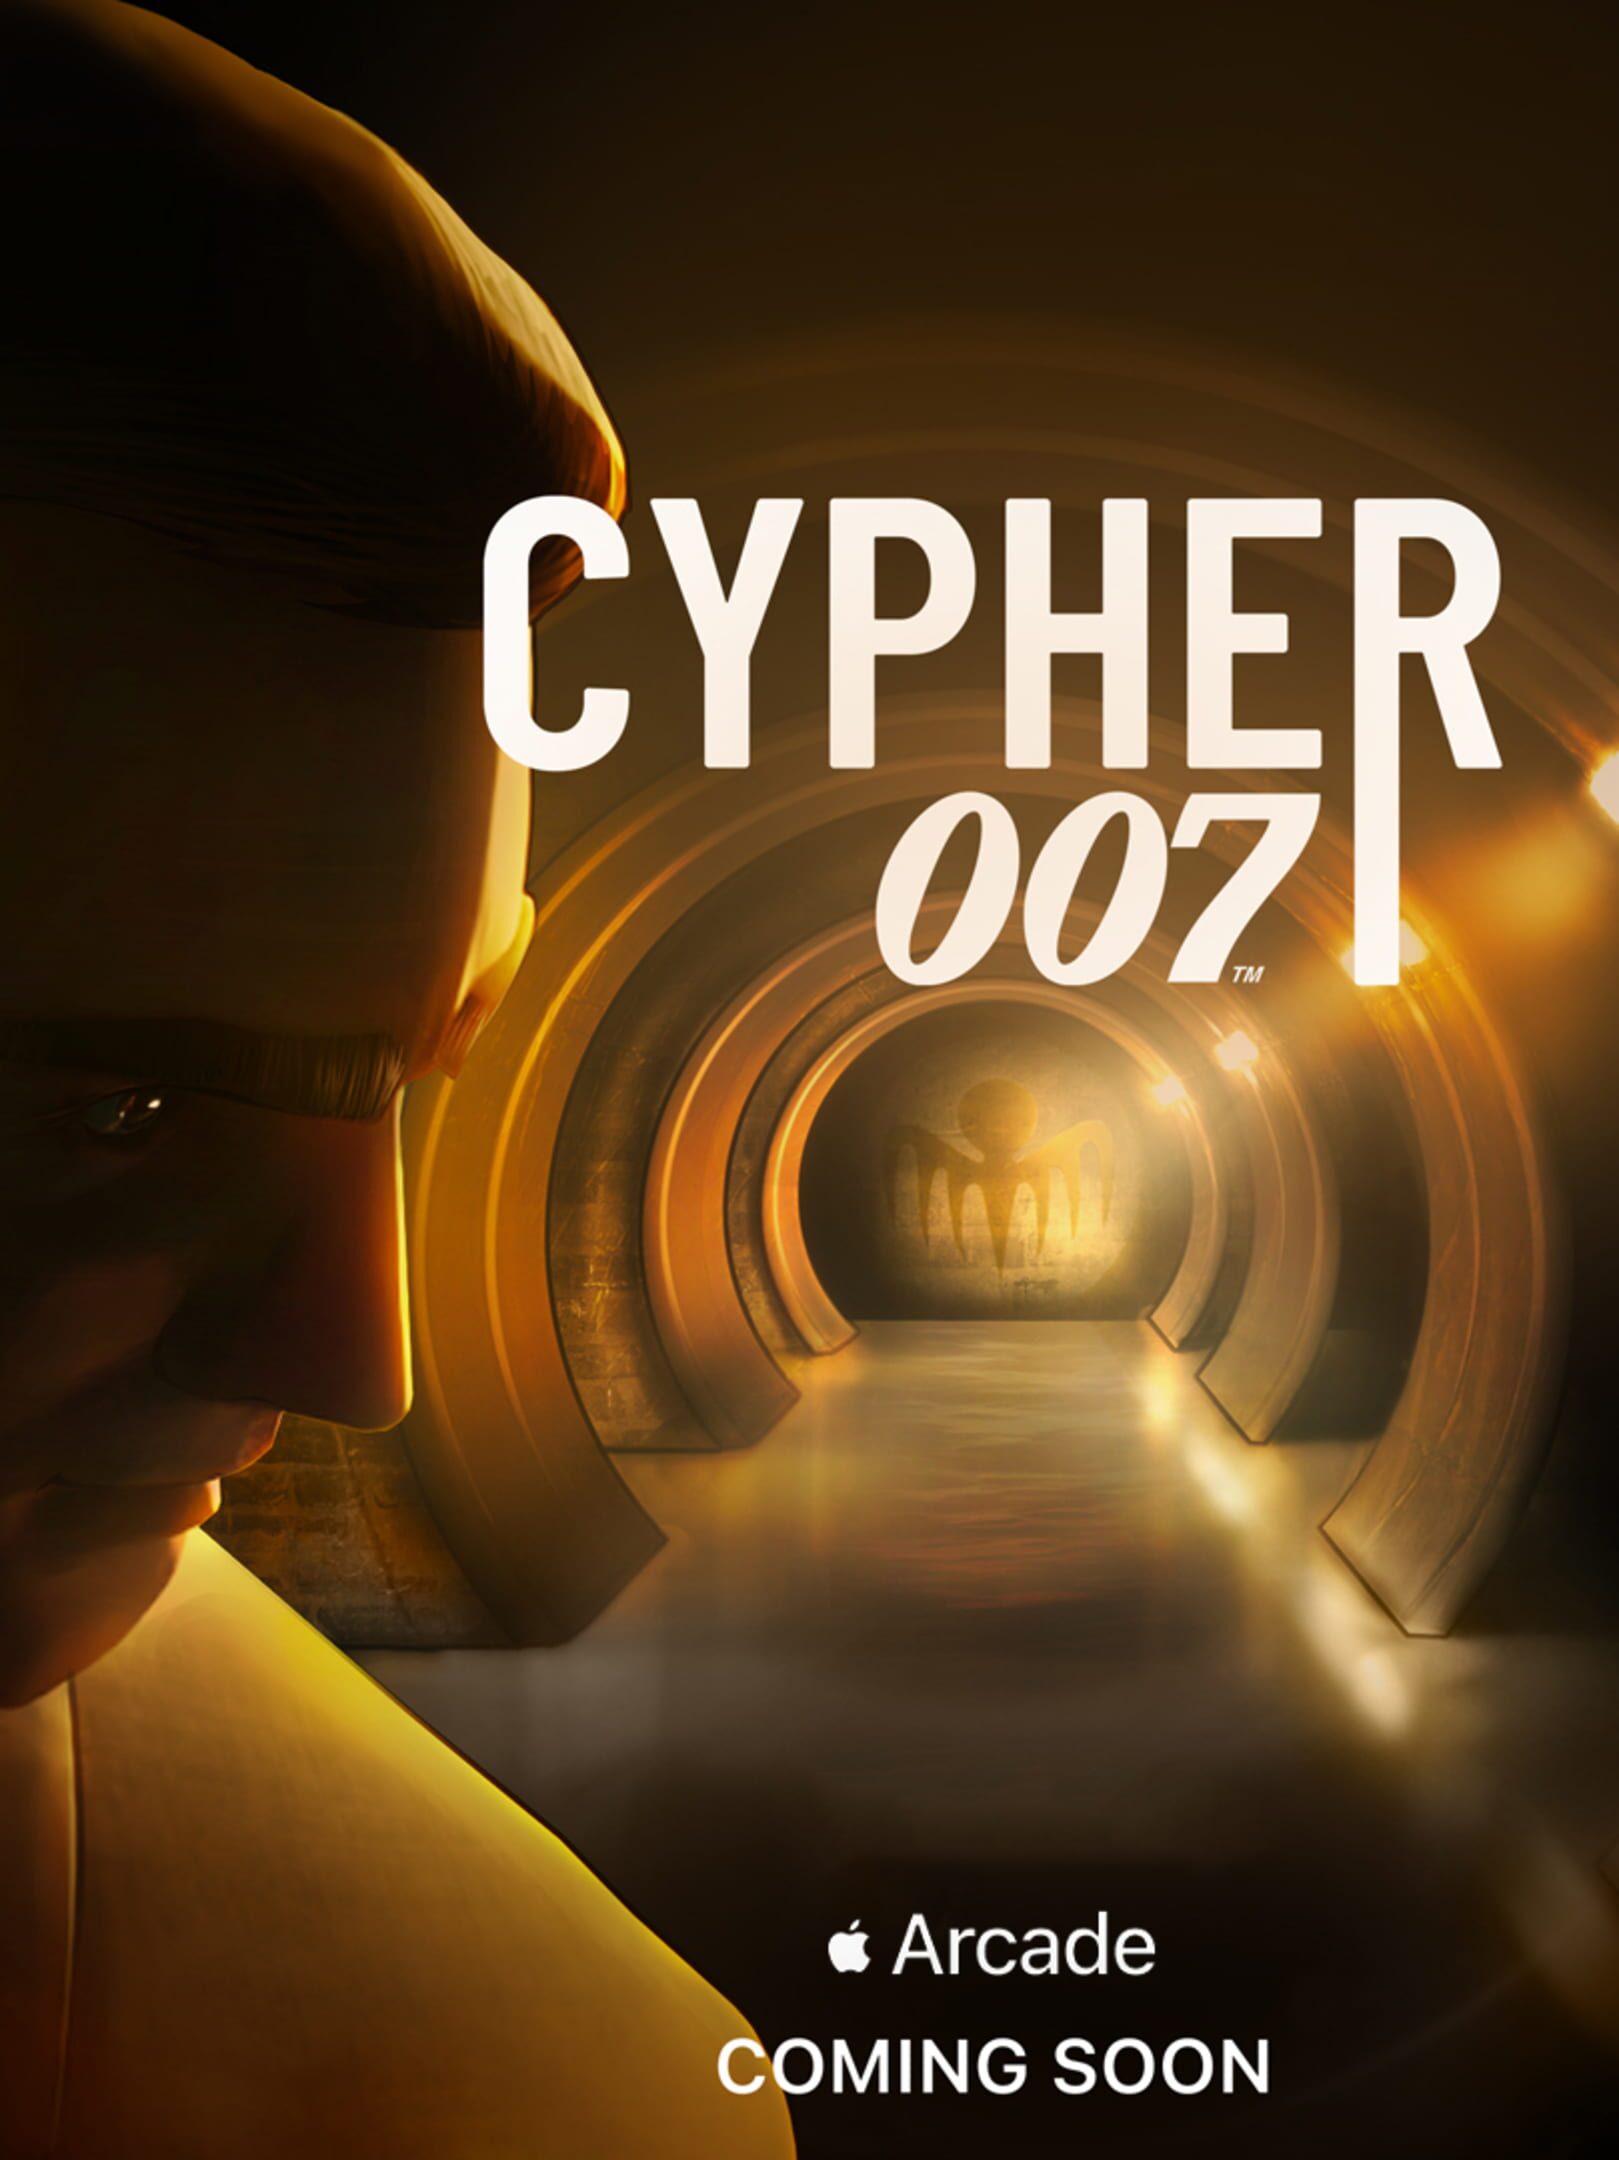 cypher-007.jpg